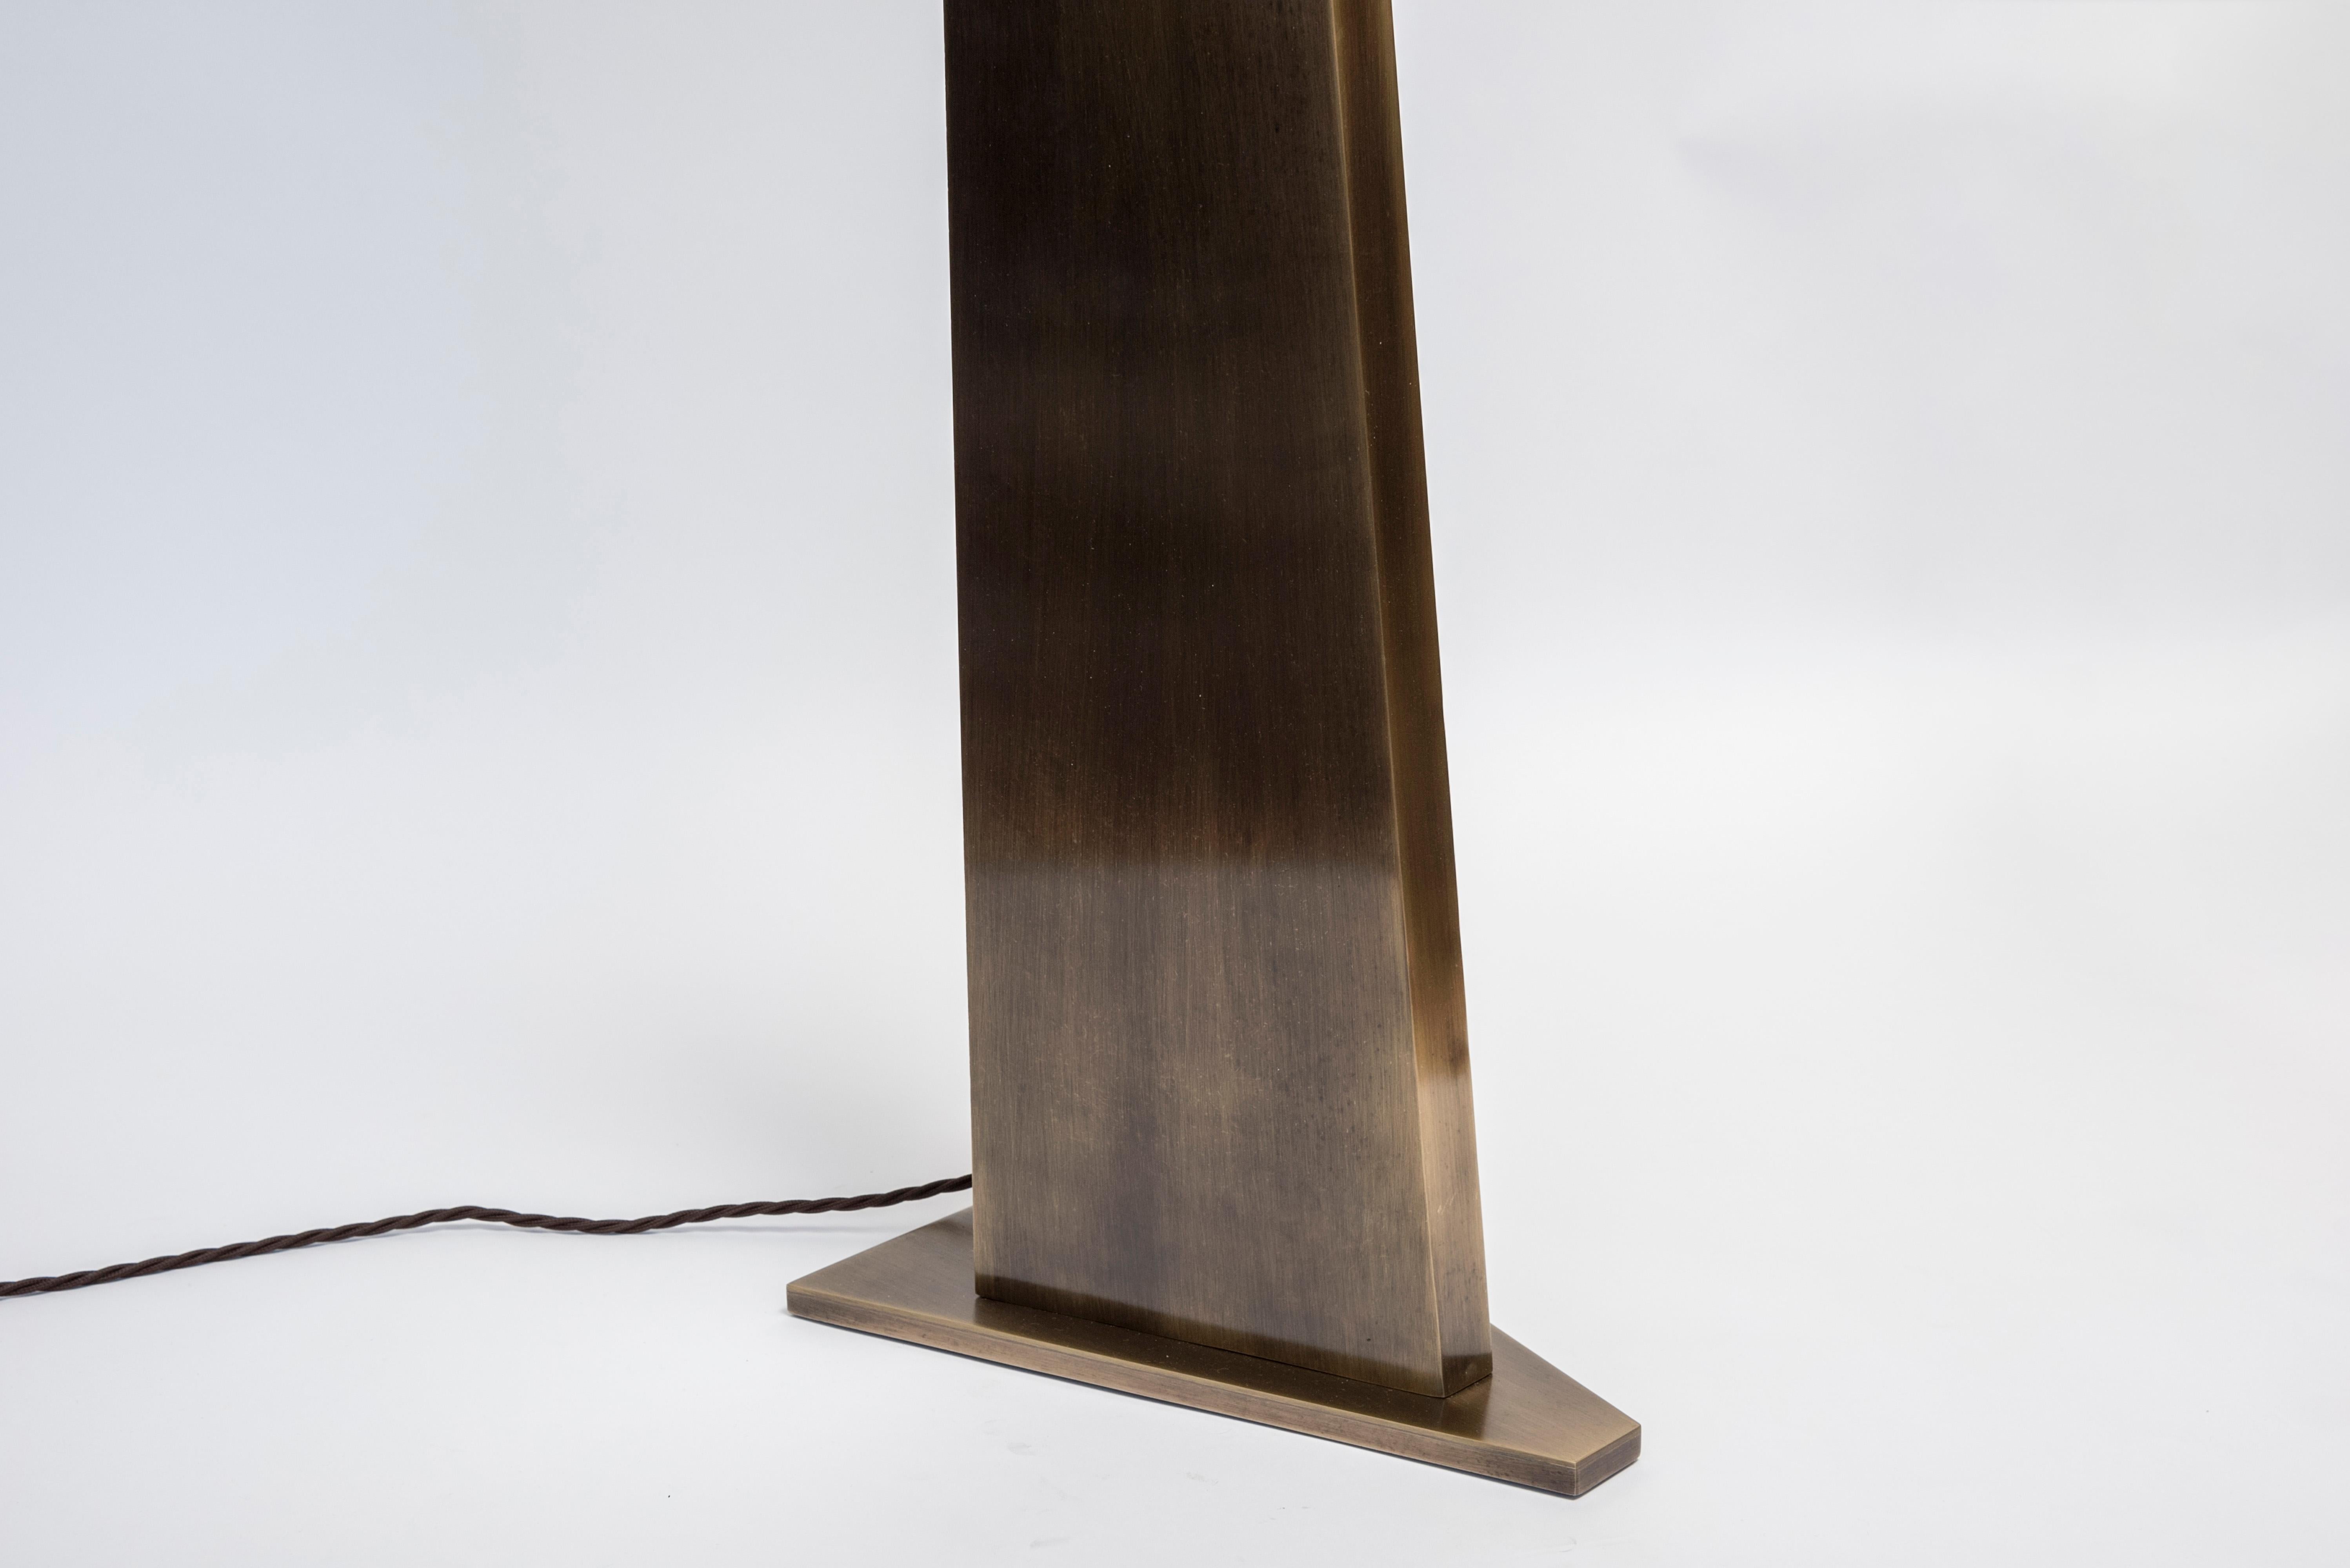 Neues Design von Glustin Luminaires, dreieckige Stehleuchte aus bronzefarbenem Messing mit einer Alabasterkugel als Lichtquelle.